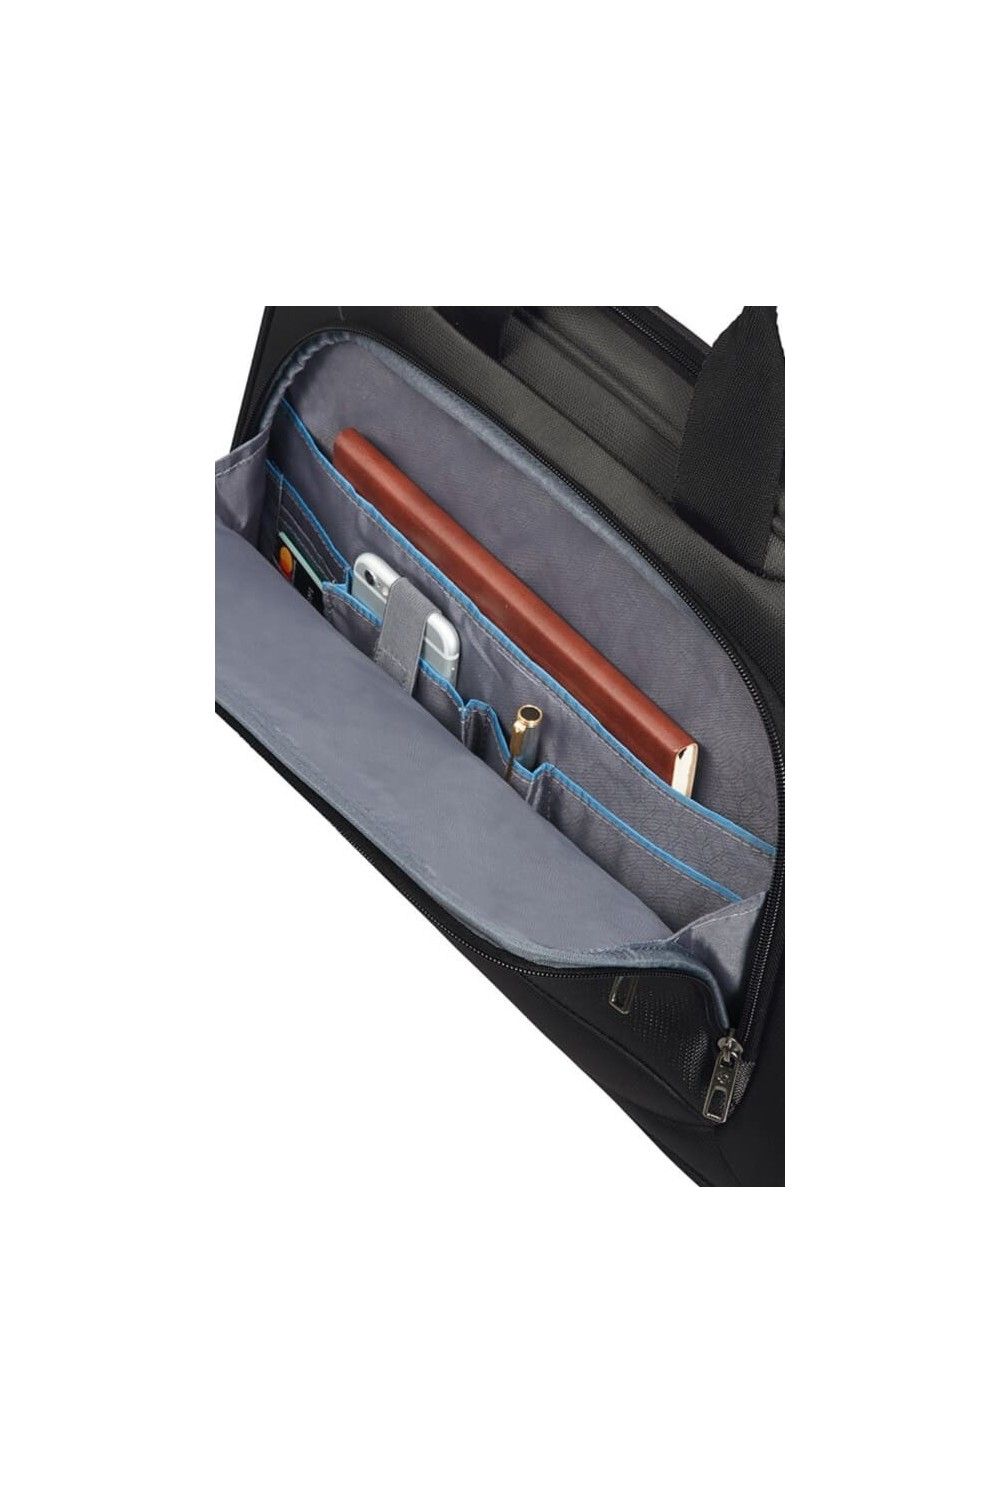 Samsonite Vectura Evo briefcase 15.6 inches 10L